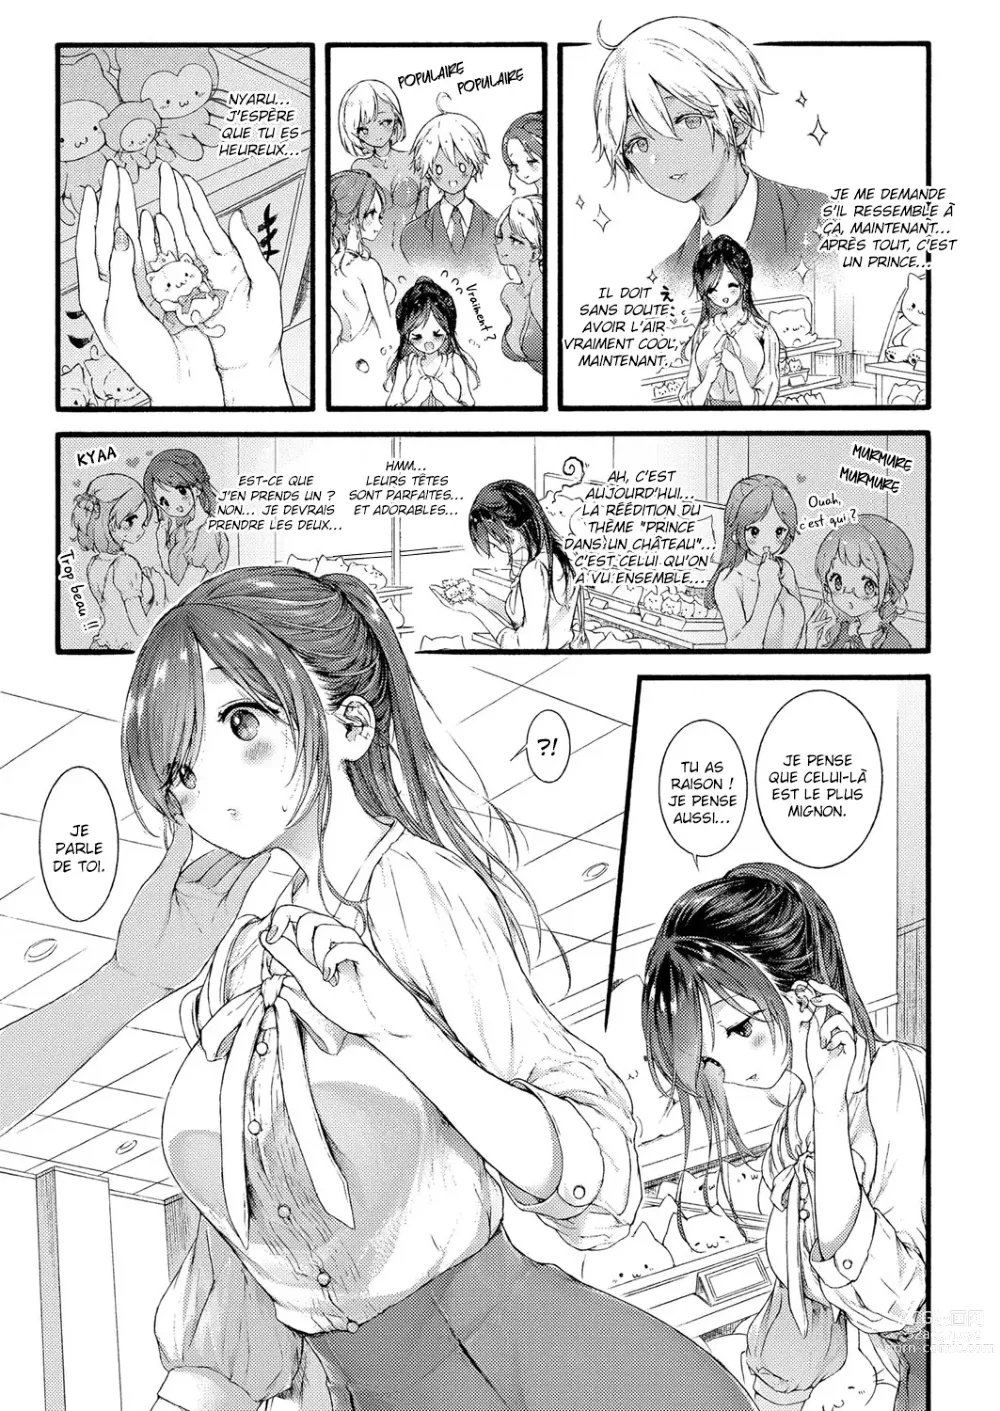 Page 31 of manga Princesse d'une contrée lointaine